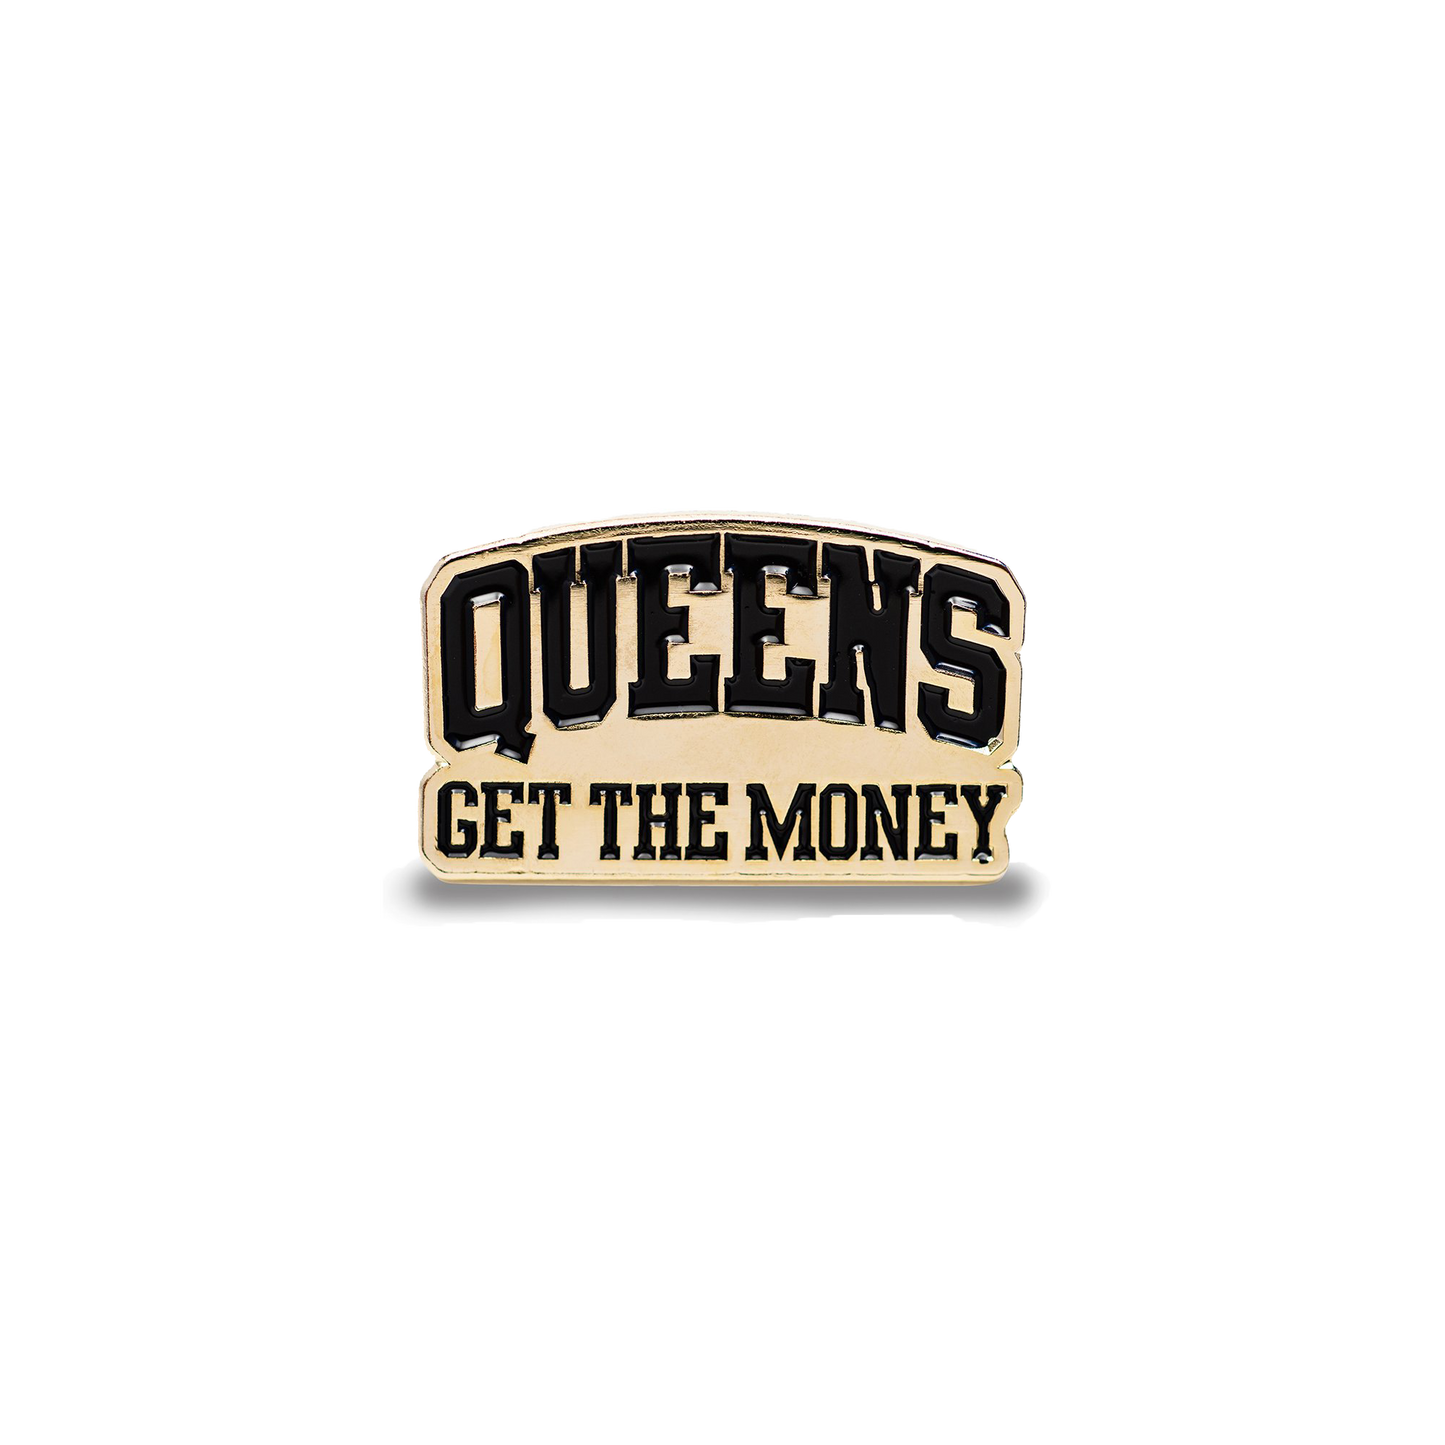 Queens Get The Money Pin